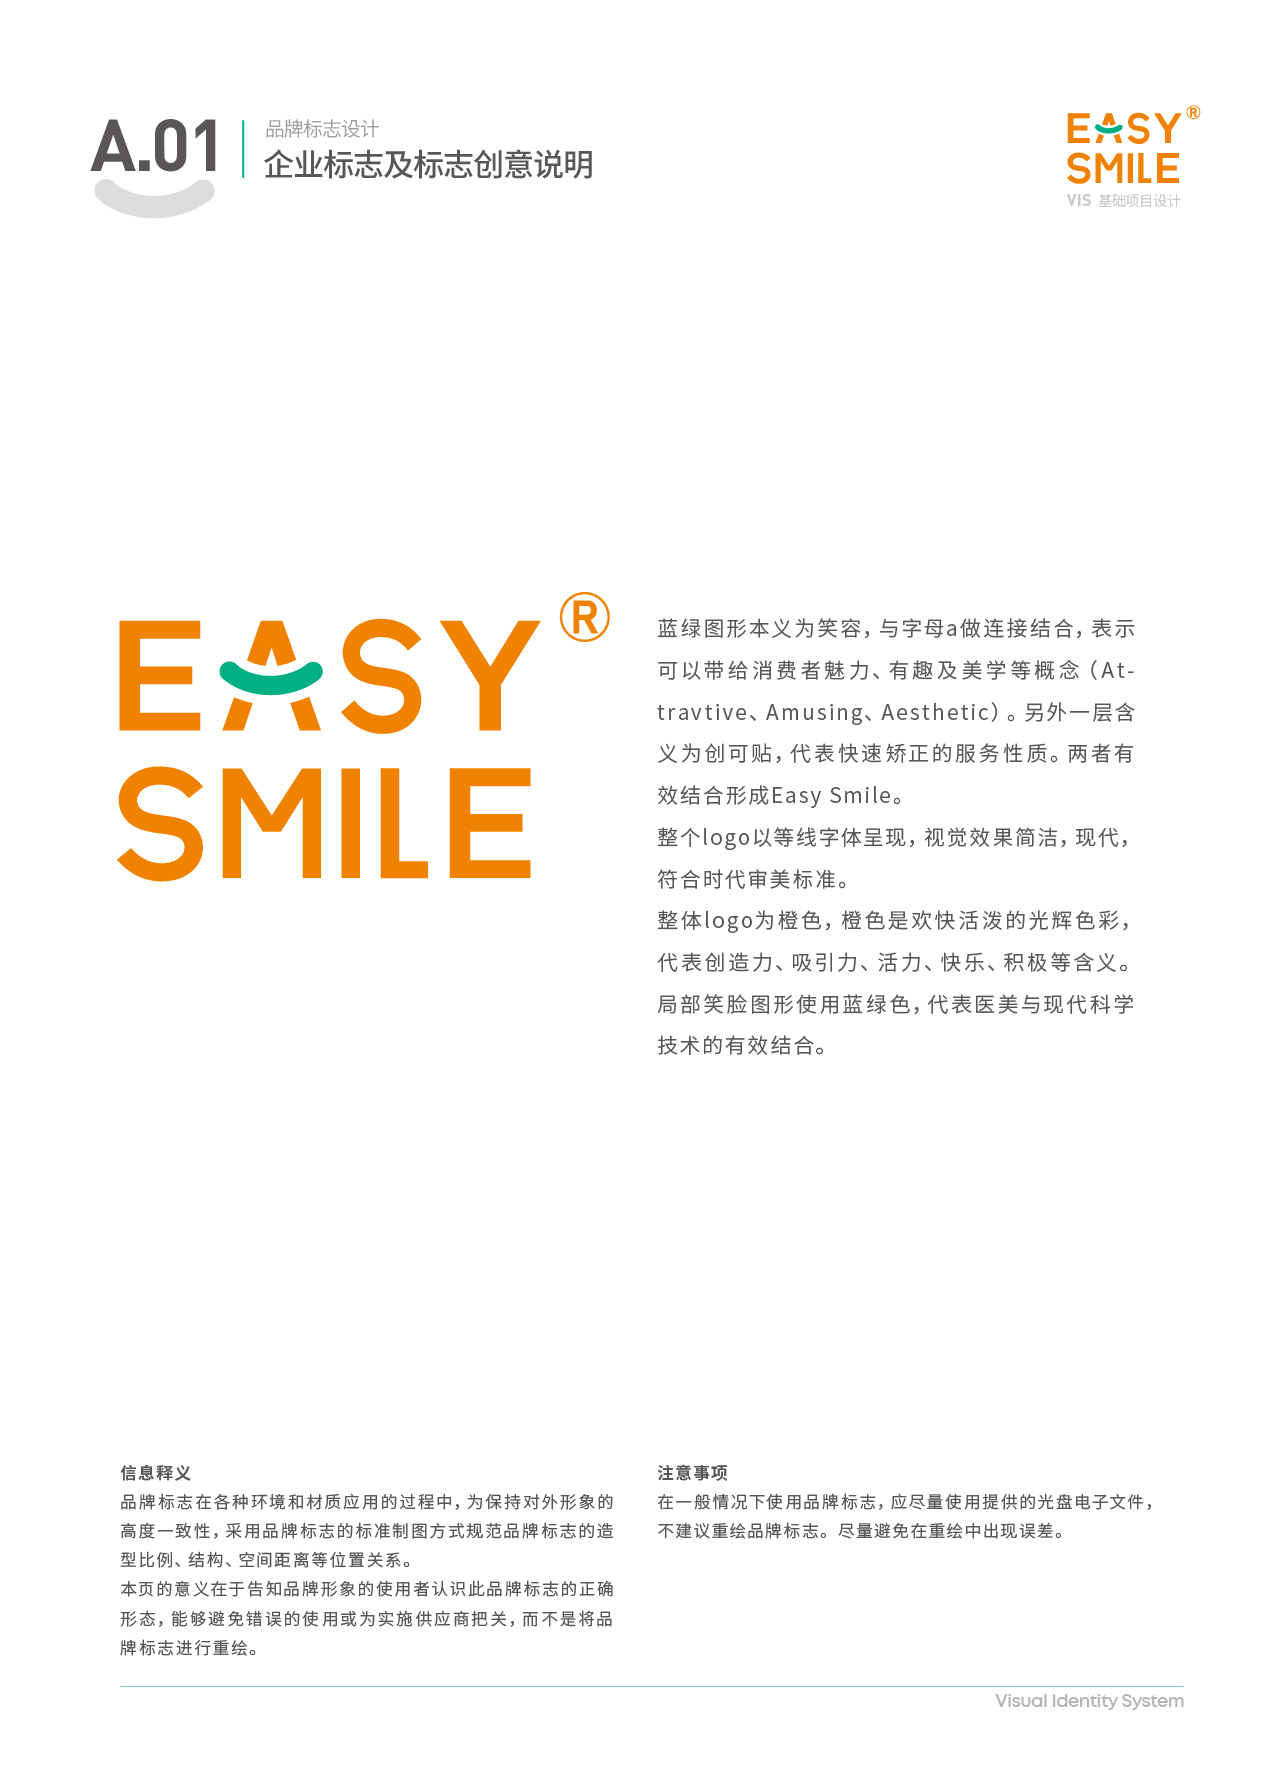 Easysmile 轻松笑品牌VIS图4